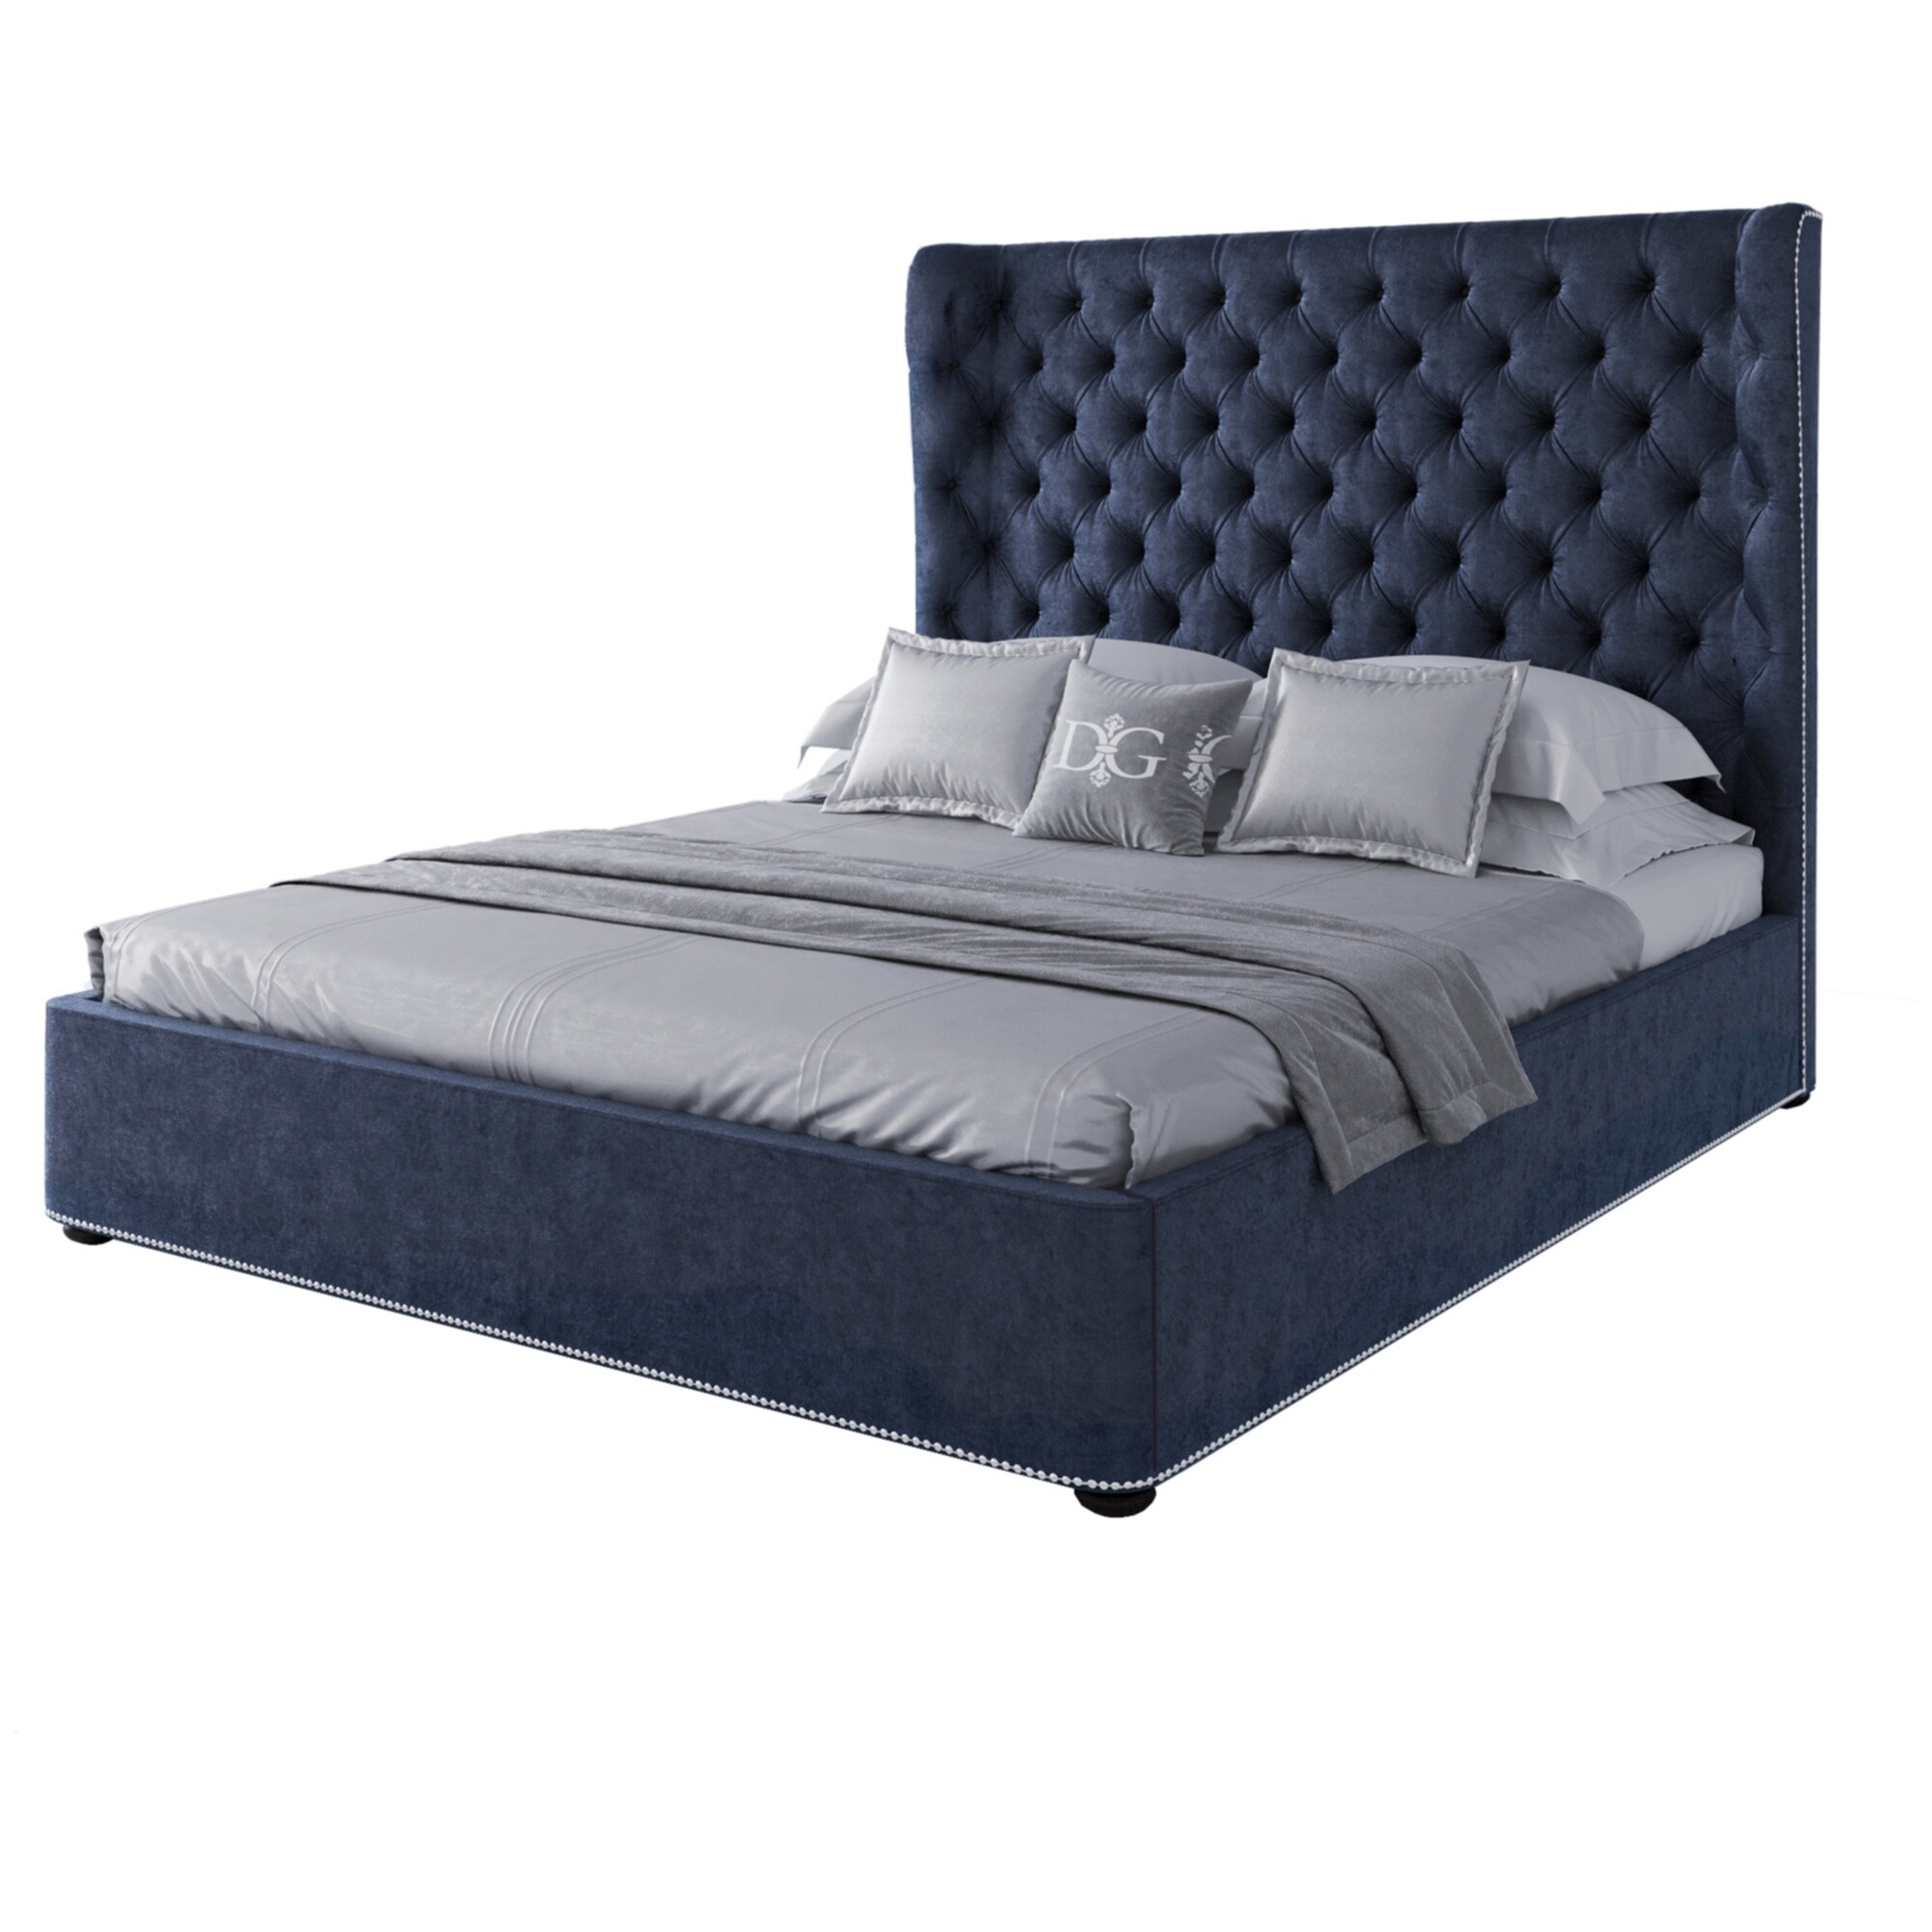 Кровать двуспальная 160х200 синяя с каретной стяжкой Henbord